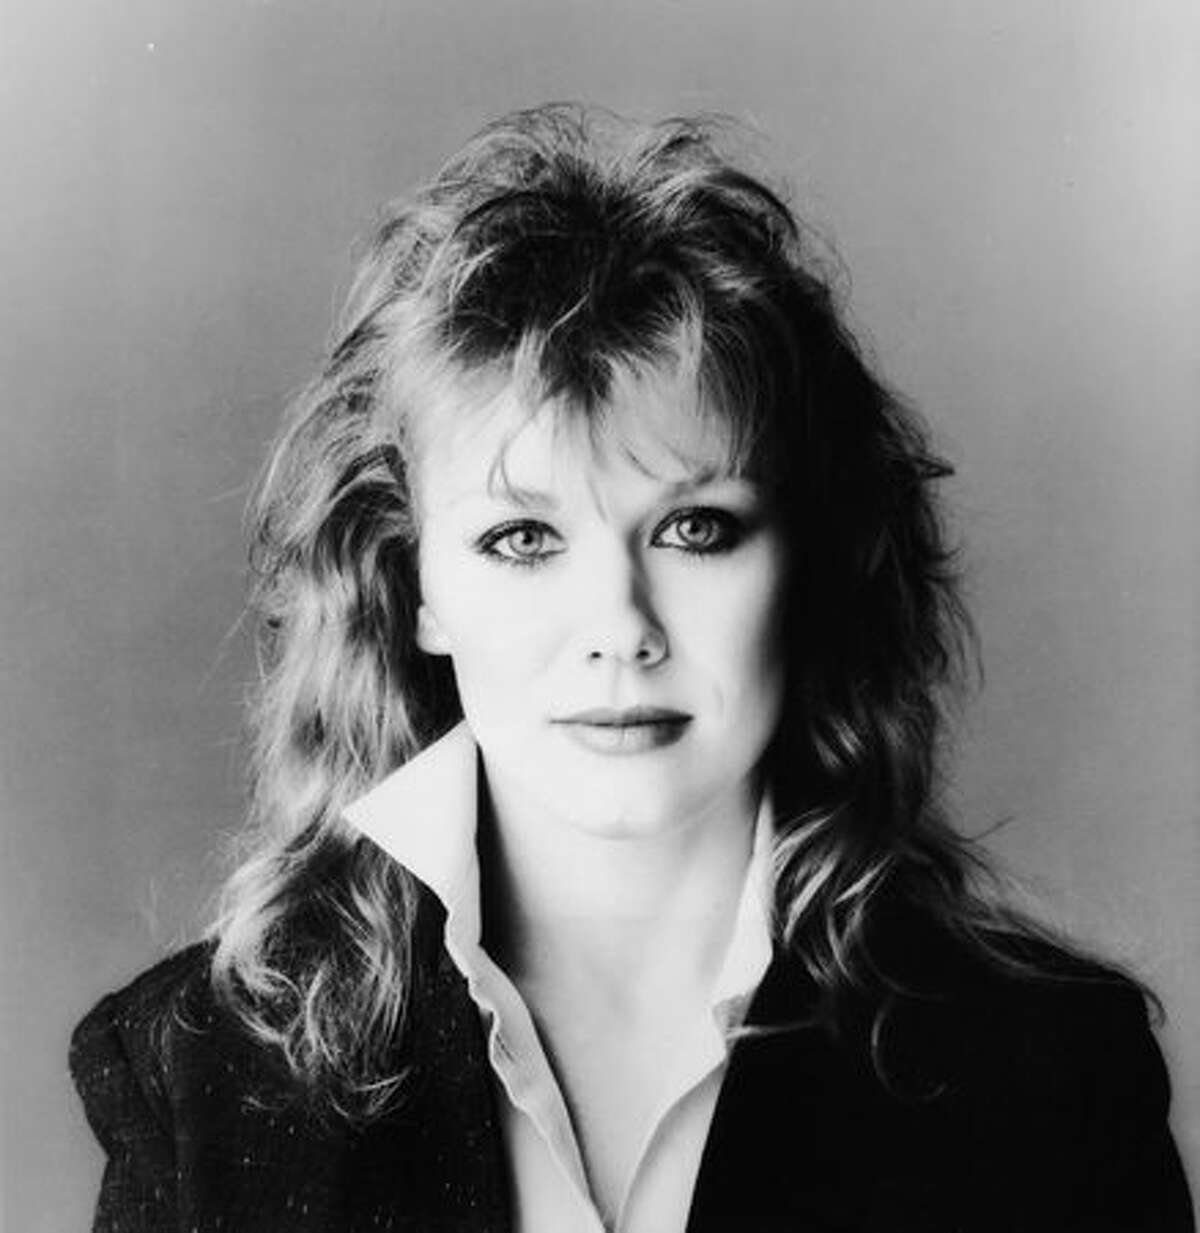 Portrait of Seattle musician Nancy Wilson of the rock group Heart, 1980s.